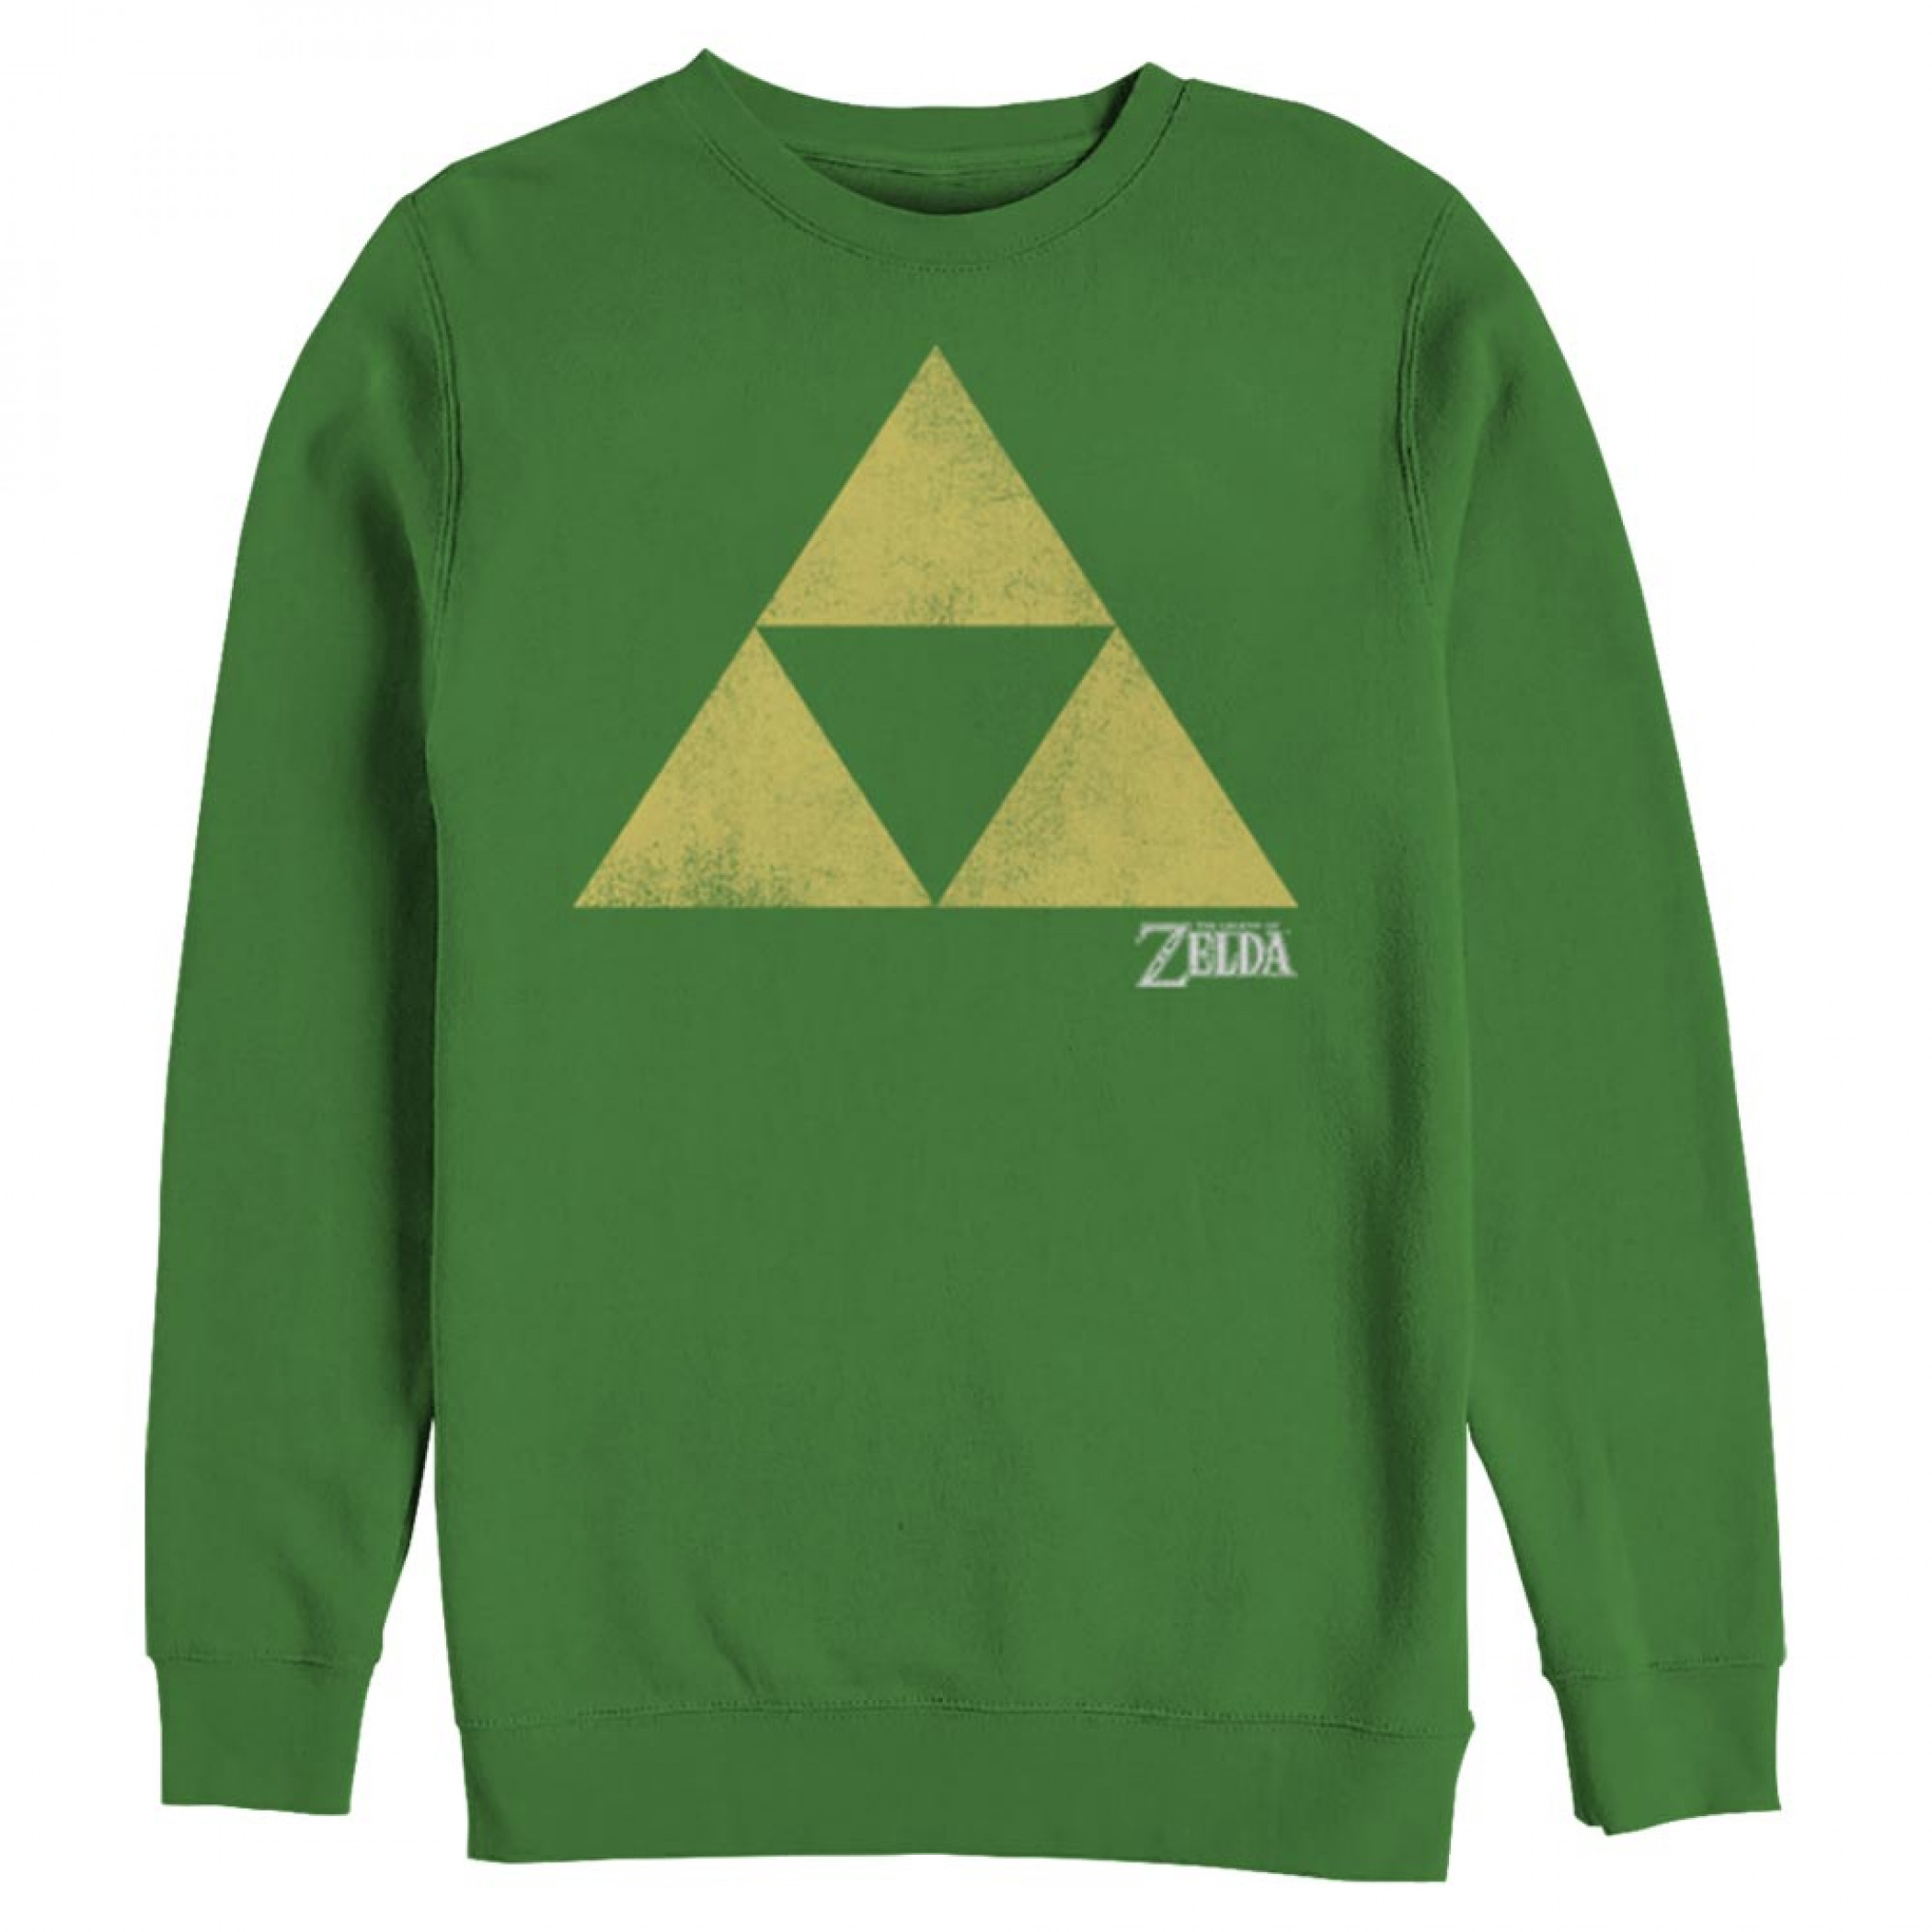 Legend of Zelda Triforce Green Colorway Sweatshirt